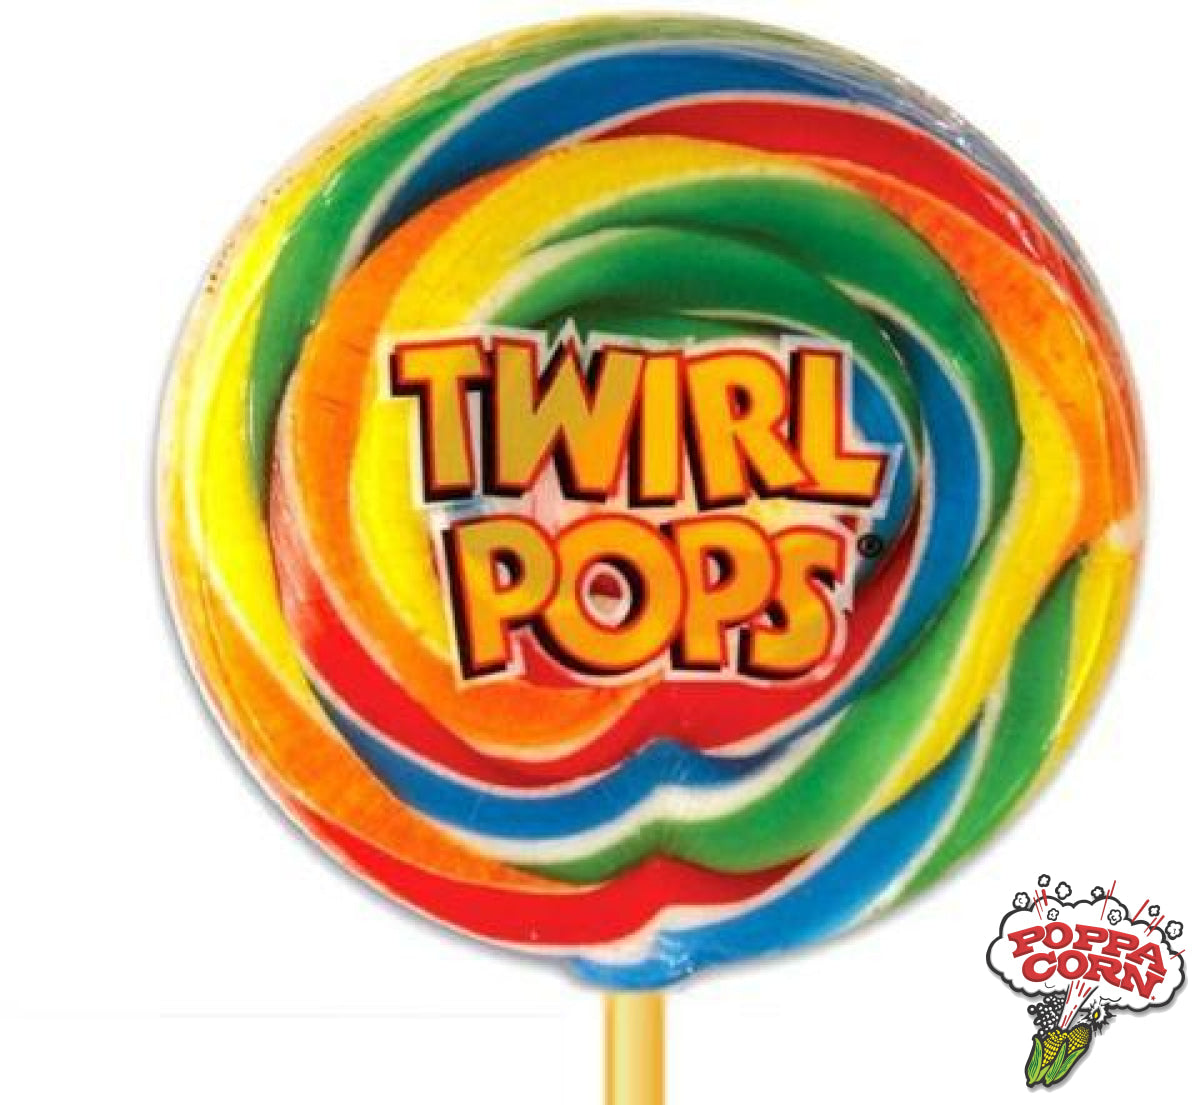 Twirl Pops - 36/Case - POP001 - Poppa Corn Corp